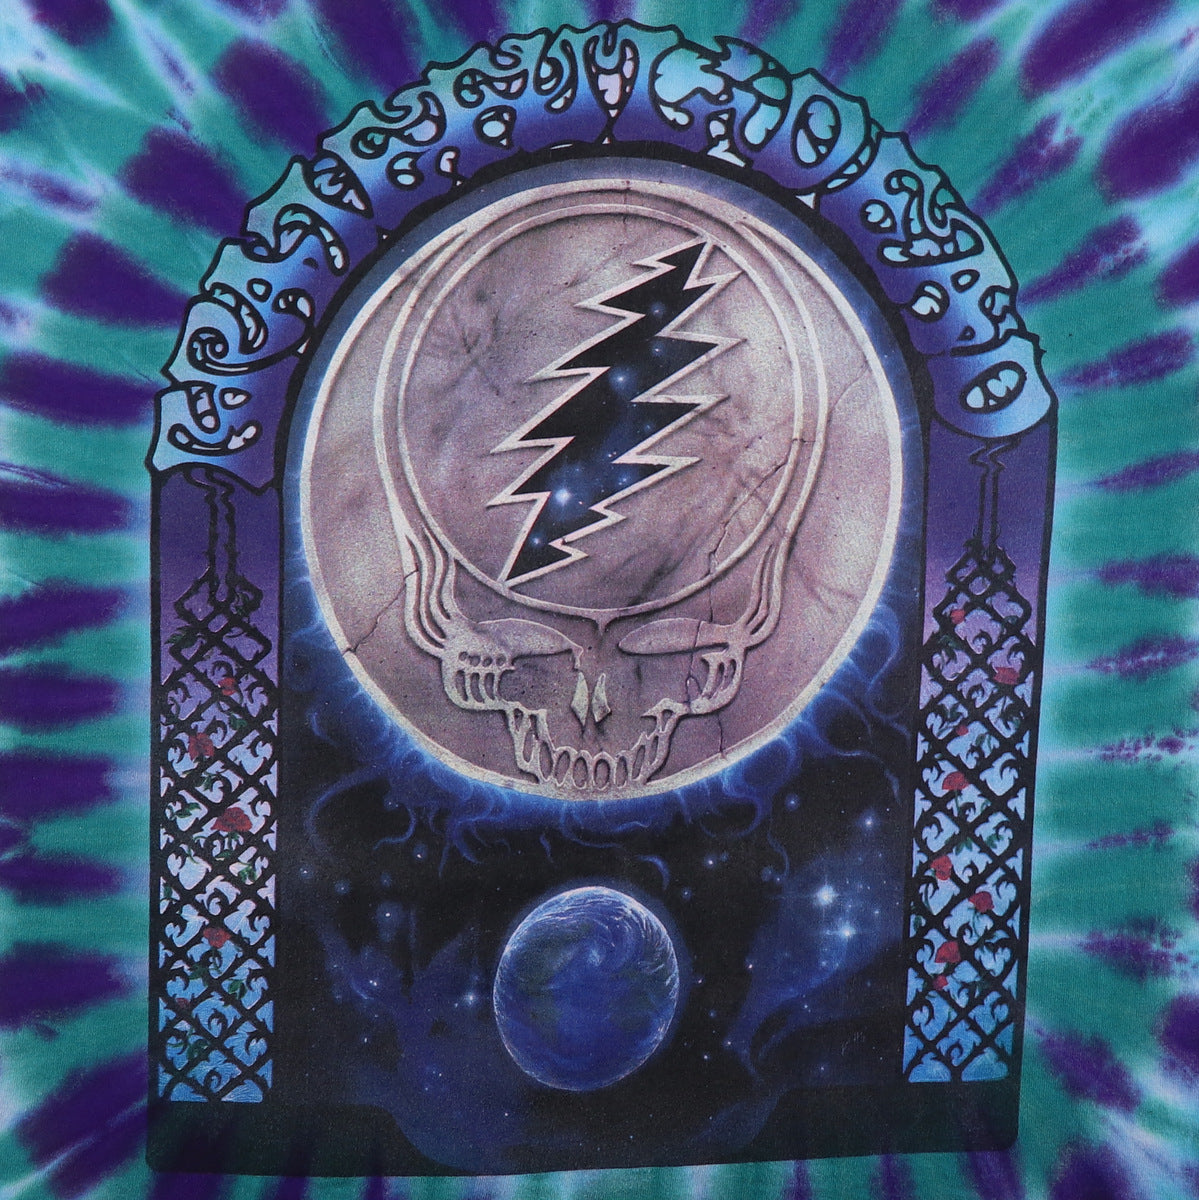 1995 Grateful Dead 30 Years Tie Dye Shirt